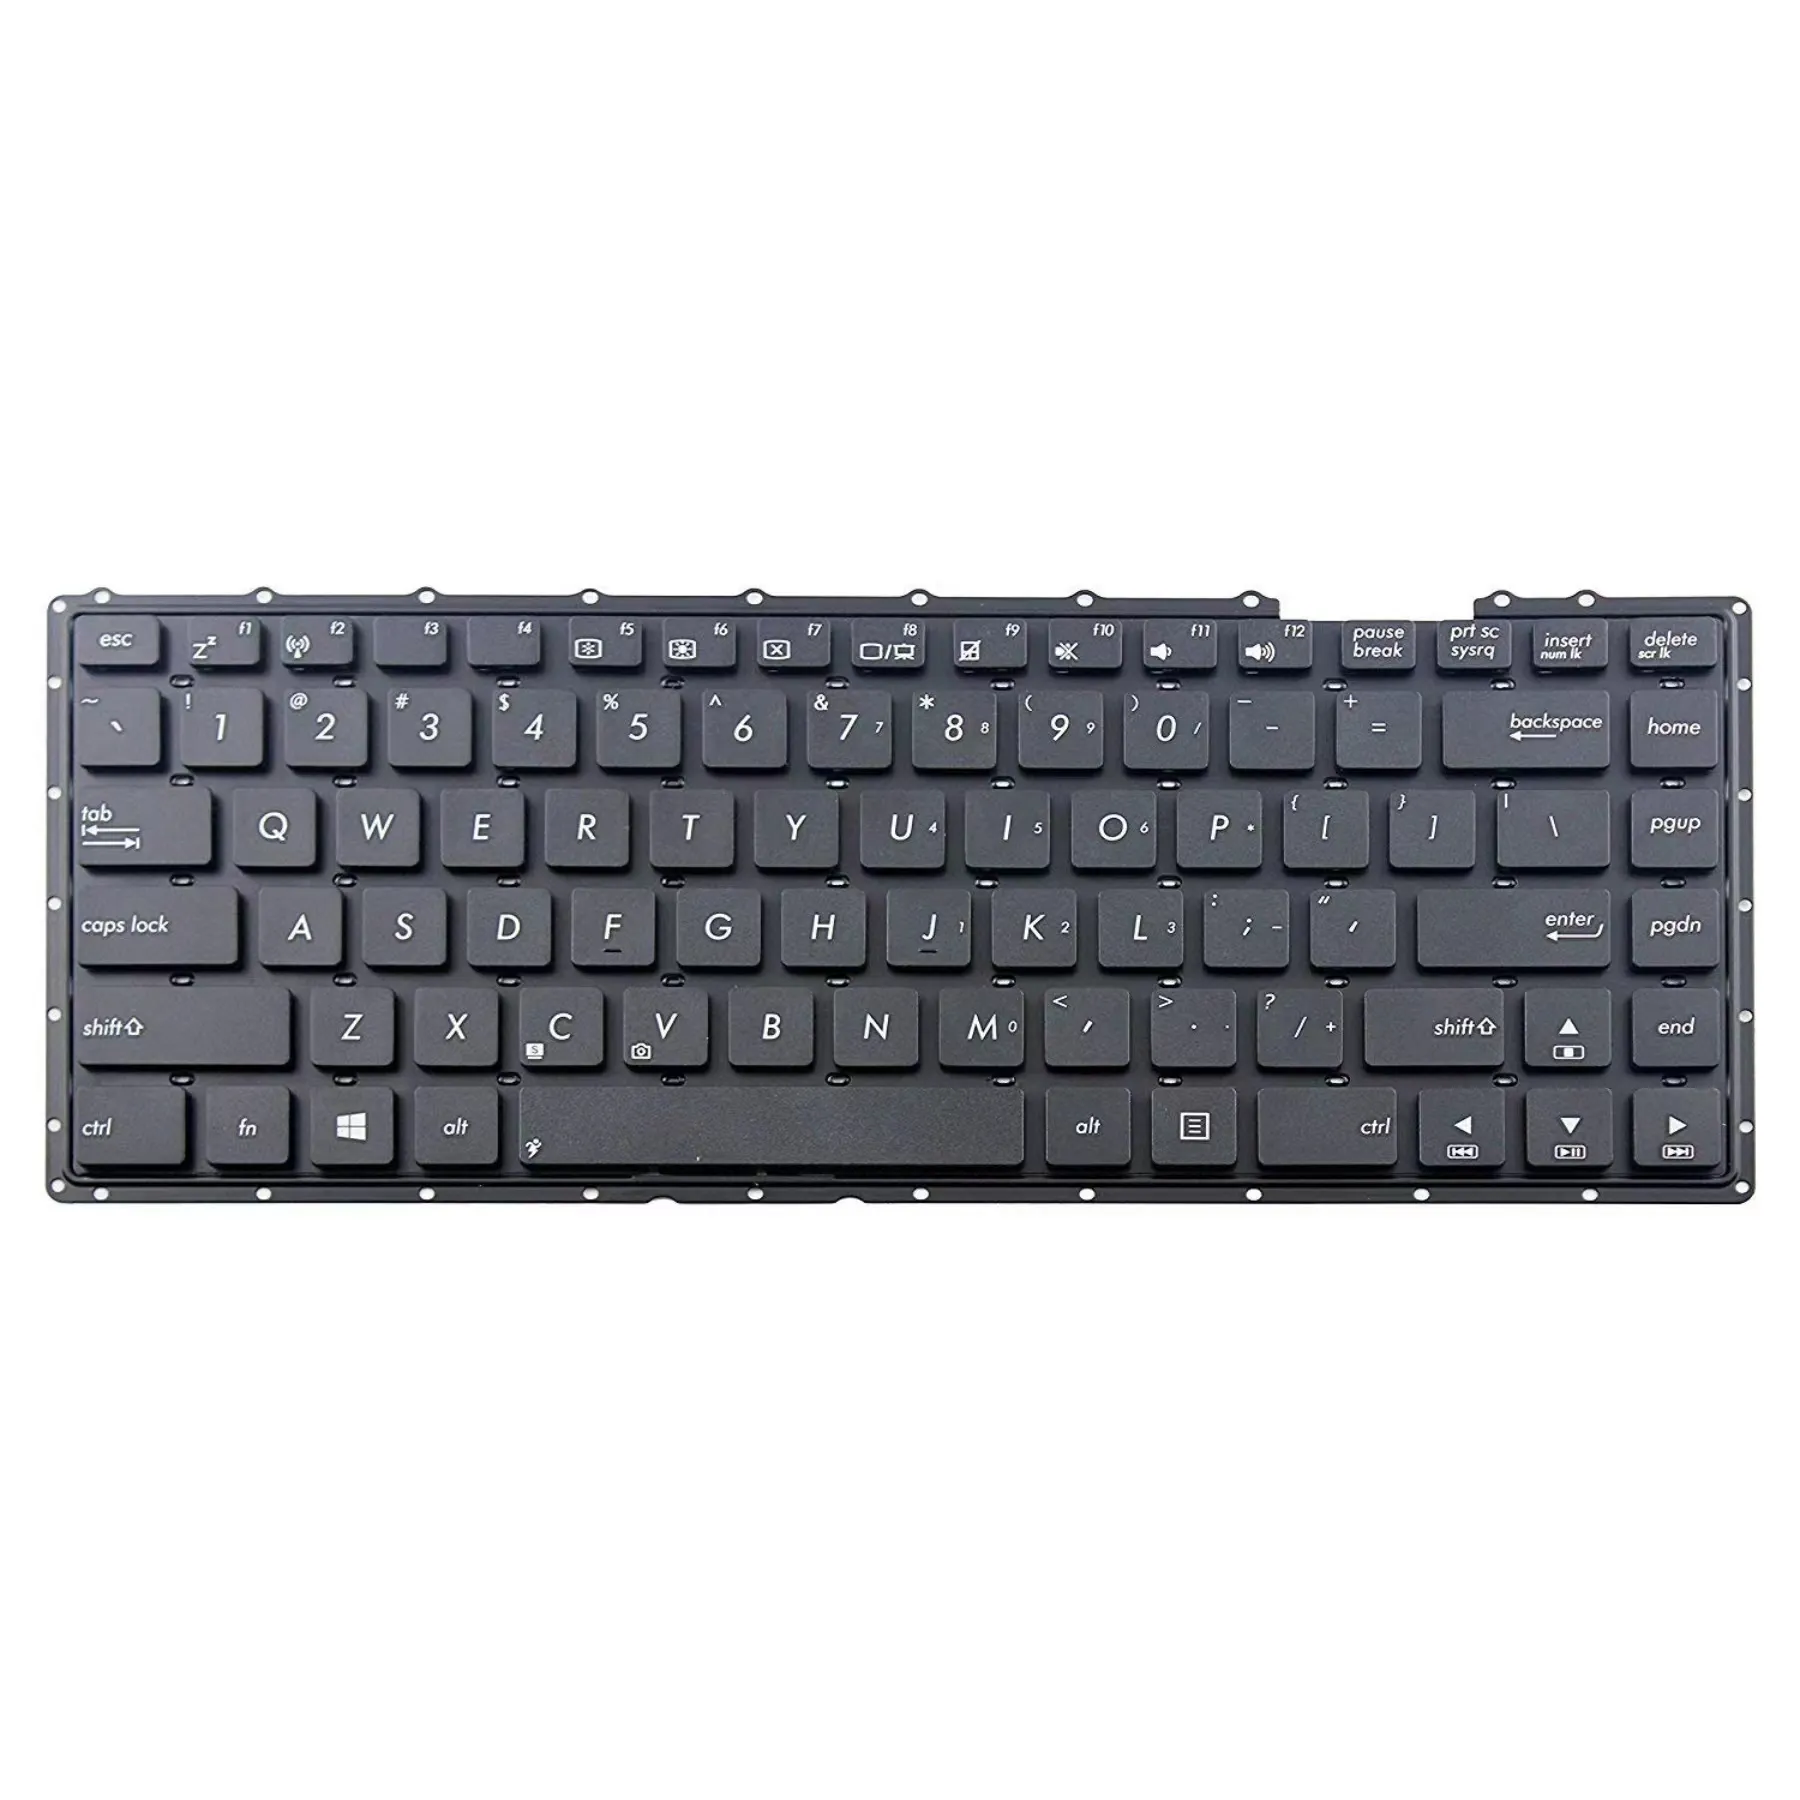 Novo teclado do portátil para Asus X451 X453 X453M X453MA X453S X453SA com moldura preta